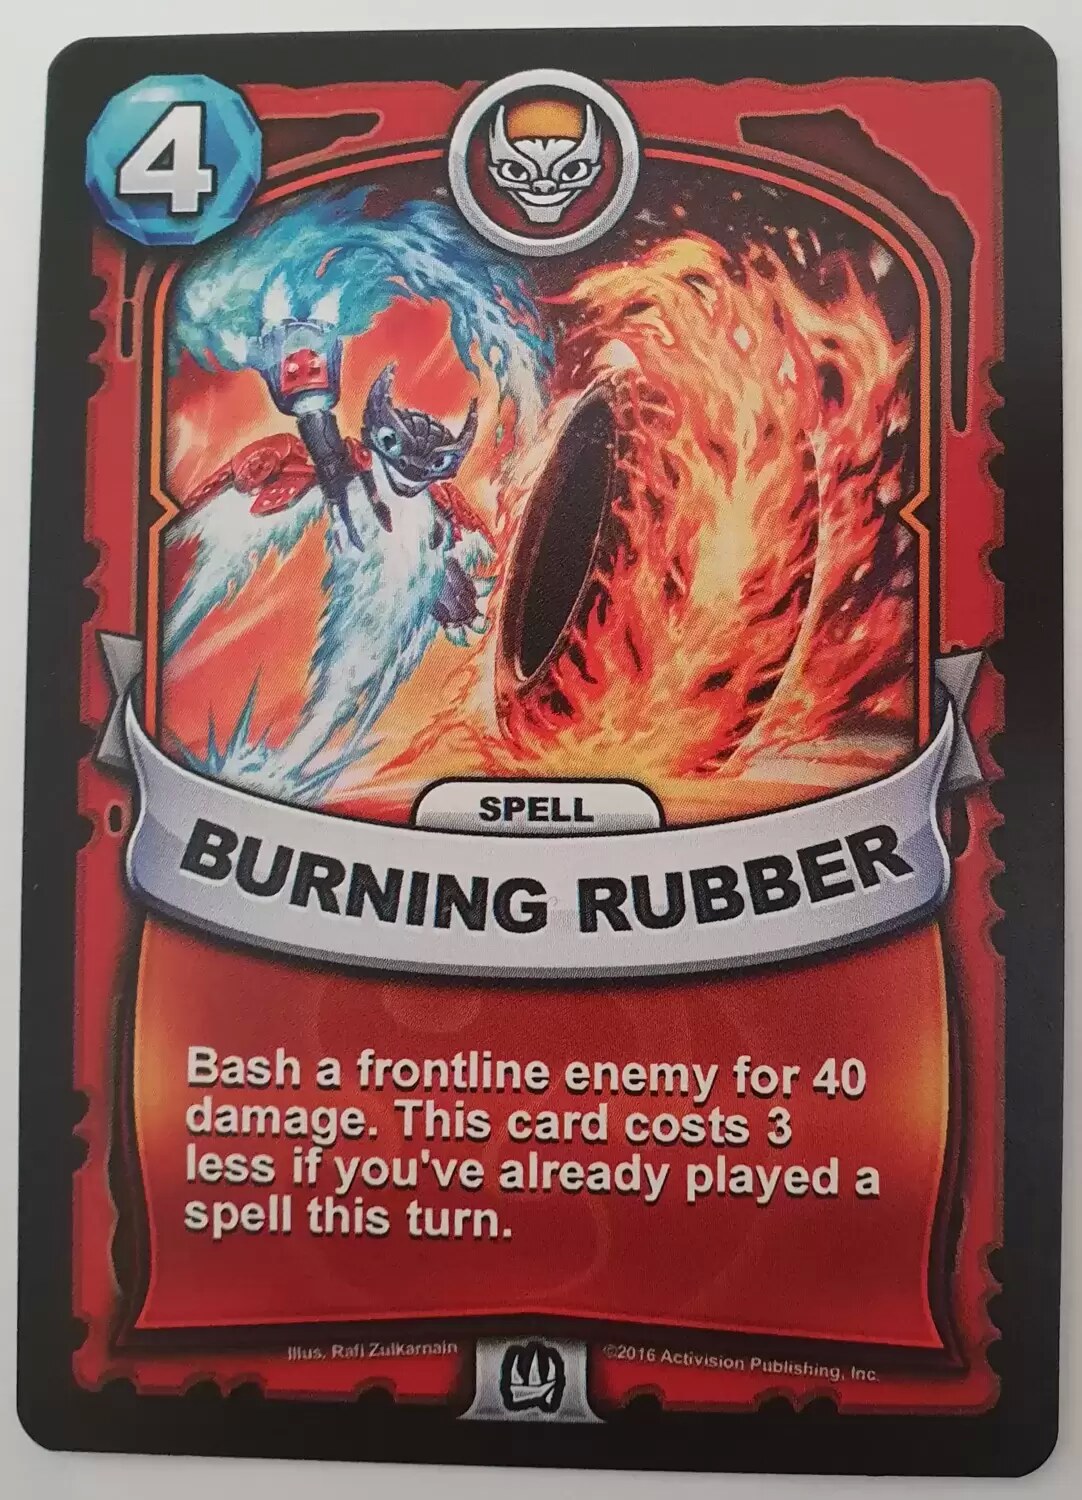 Skylanders Battlecast - Burning Rubber